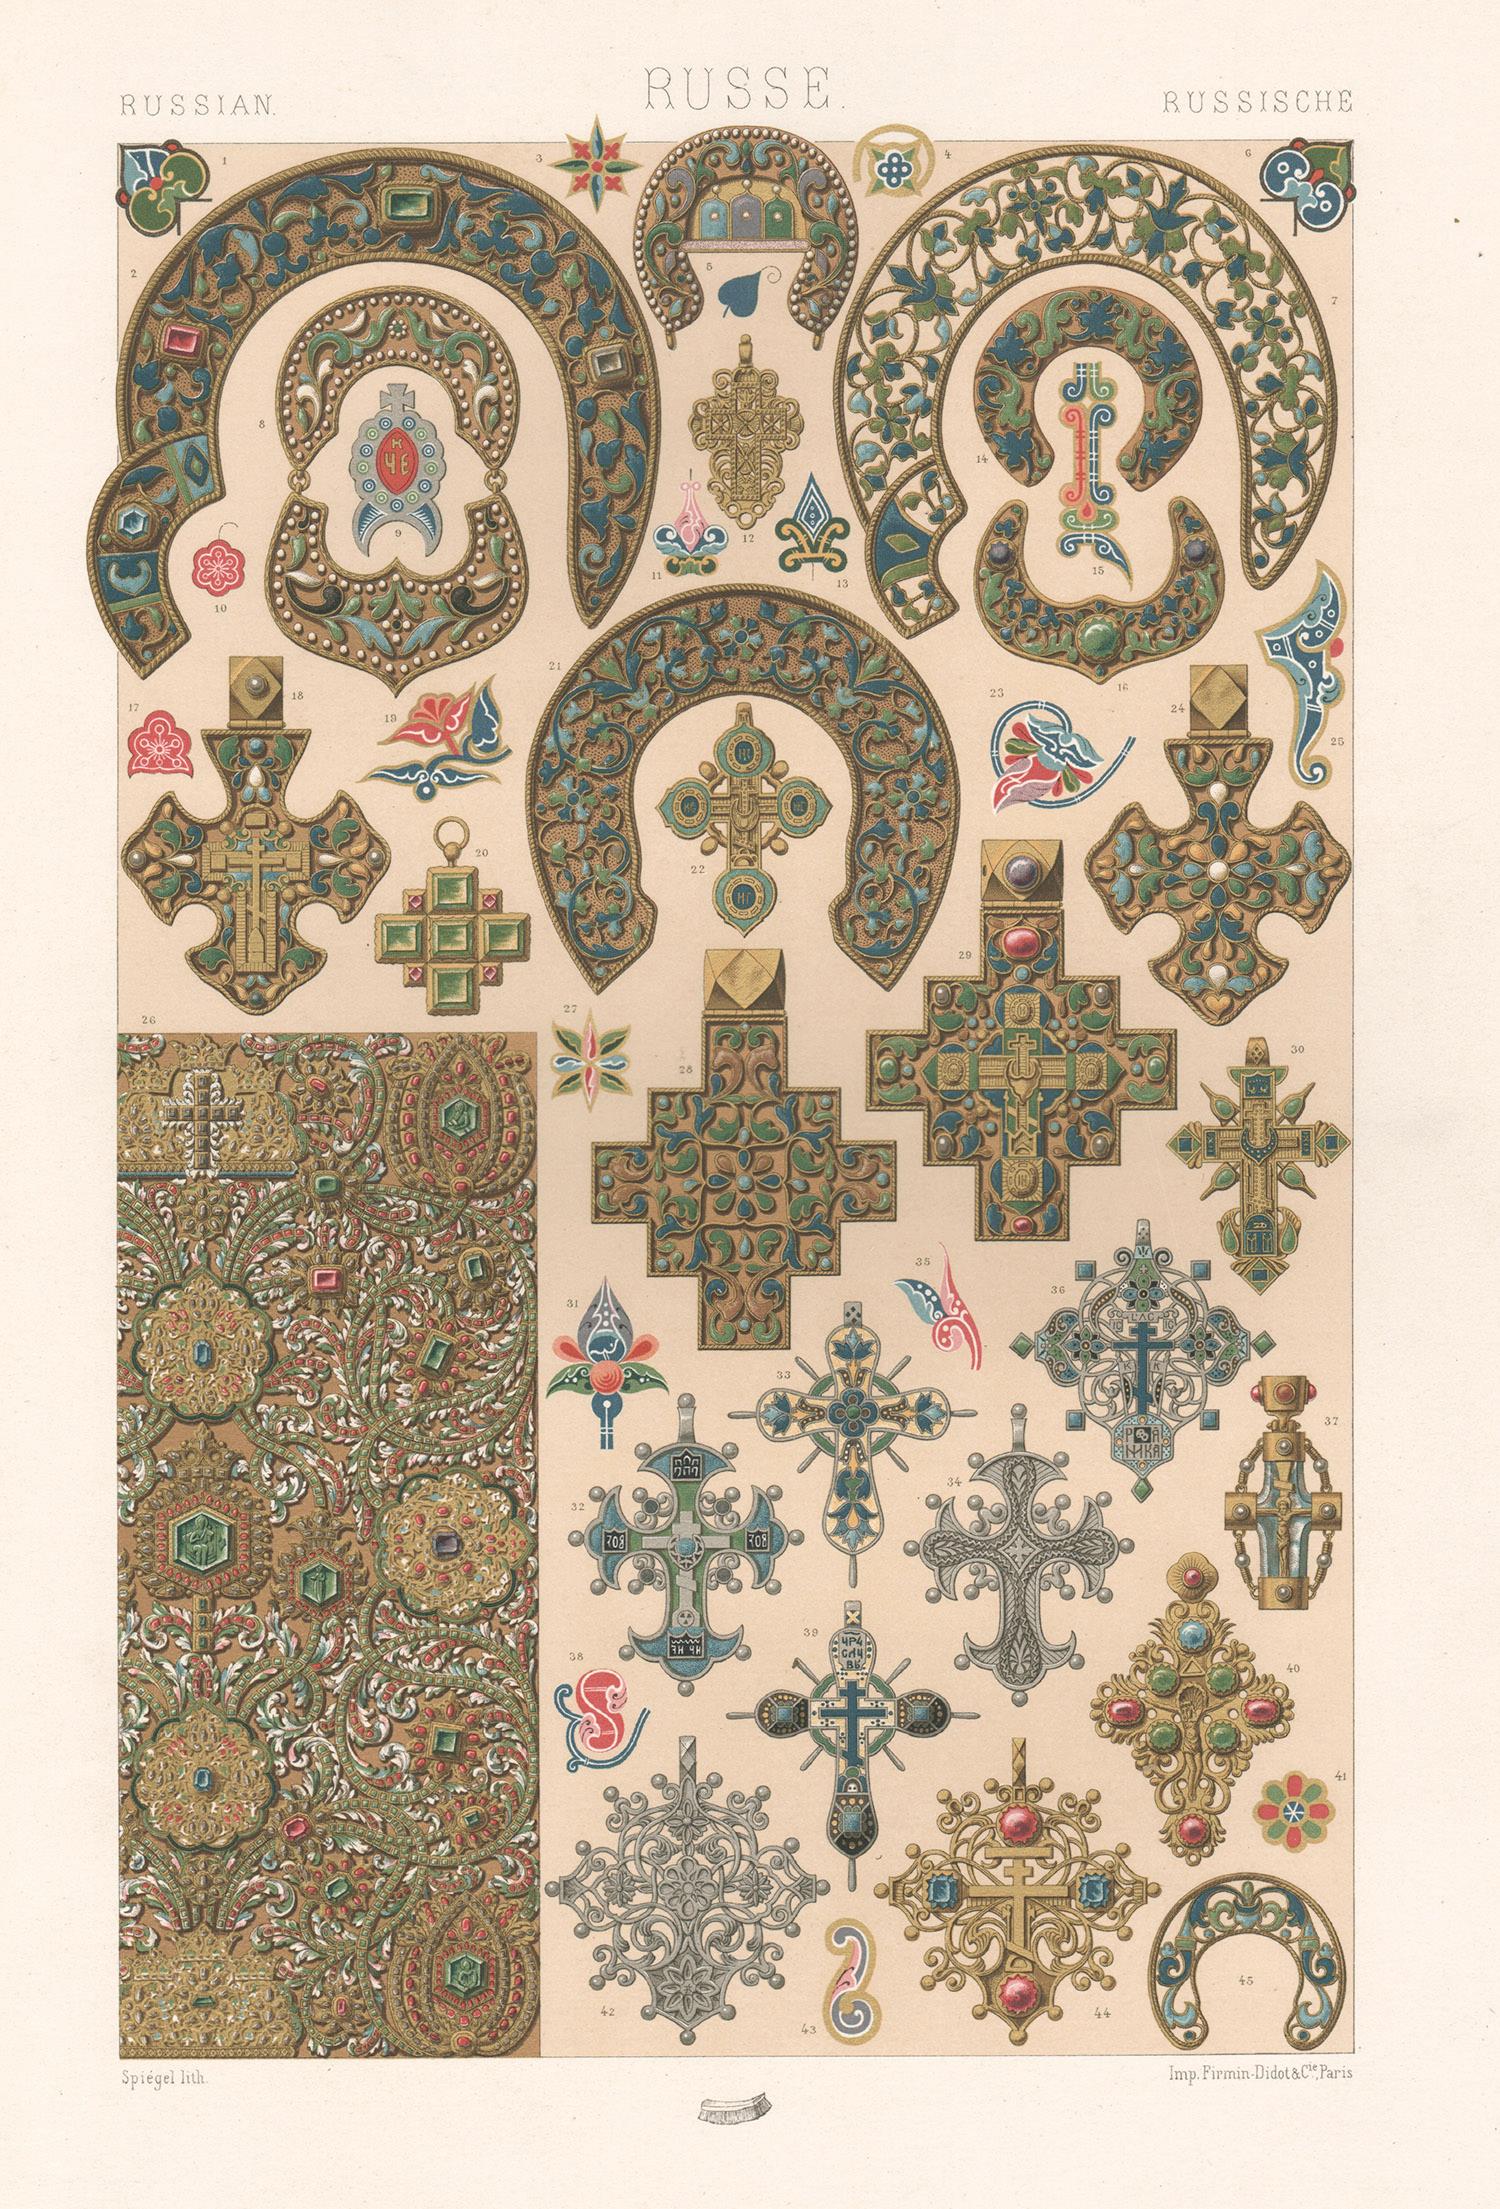 Russischer, französischer, antiker, antiker Racinet-Kunstdesign-Lithographiedruck aus dem 19. Jahrhundert